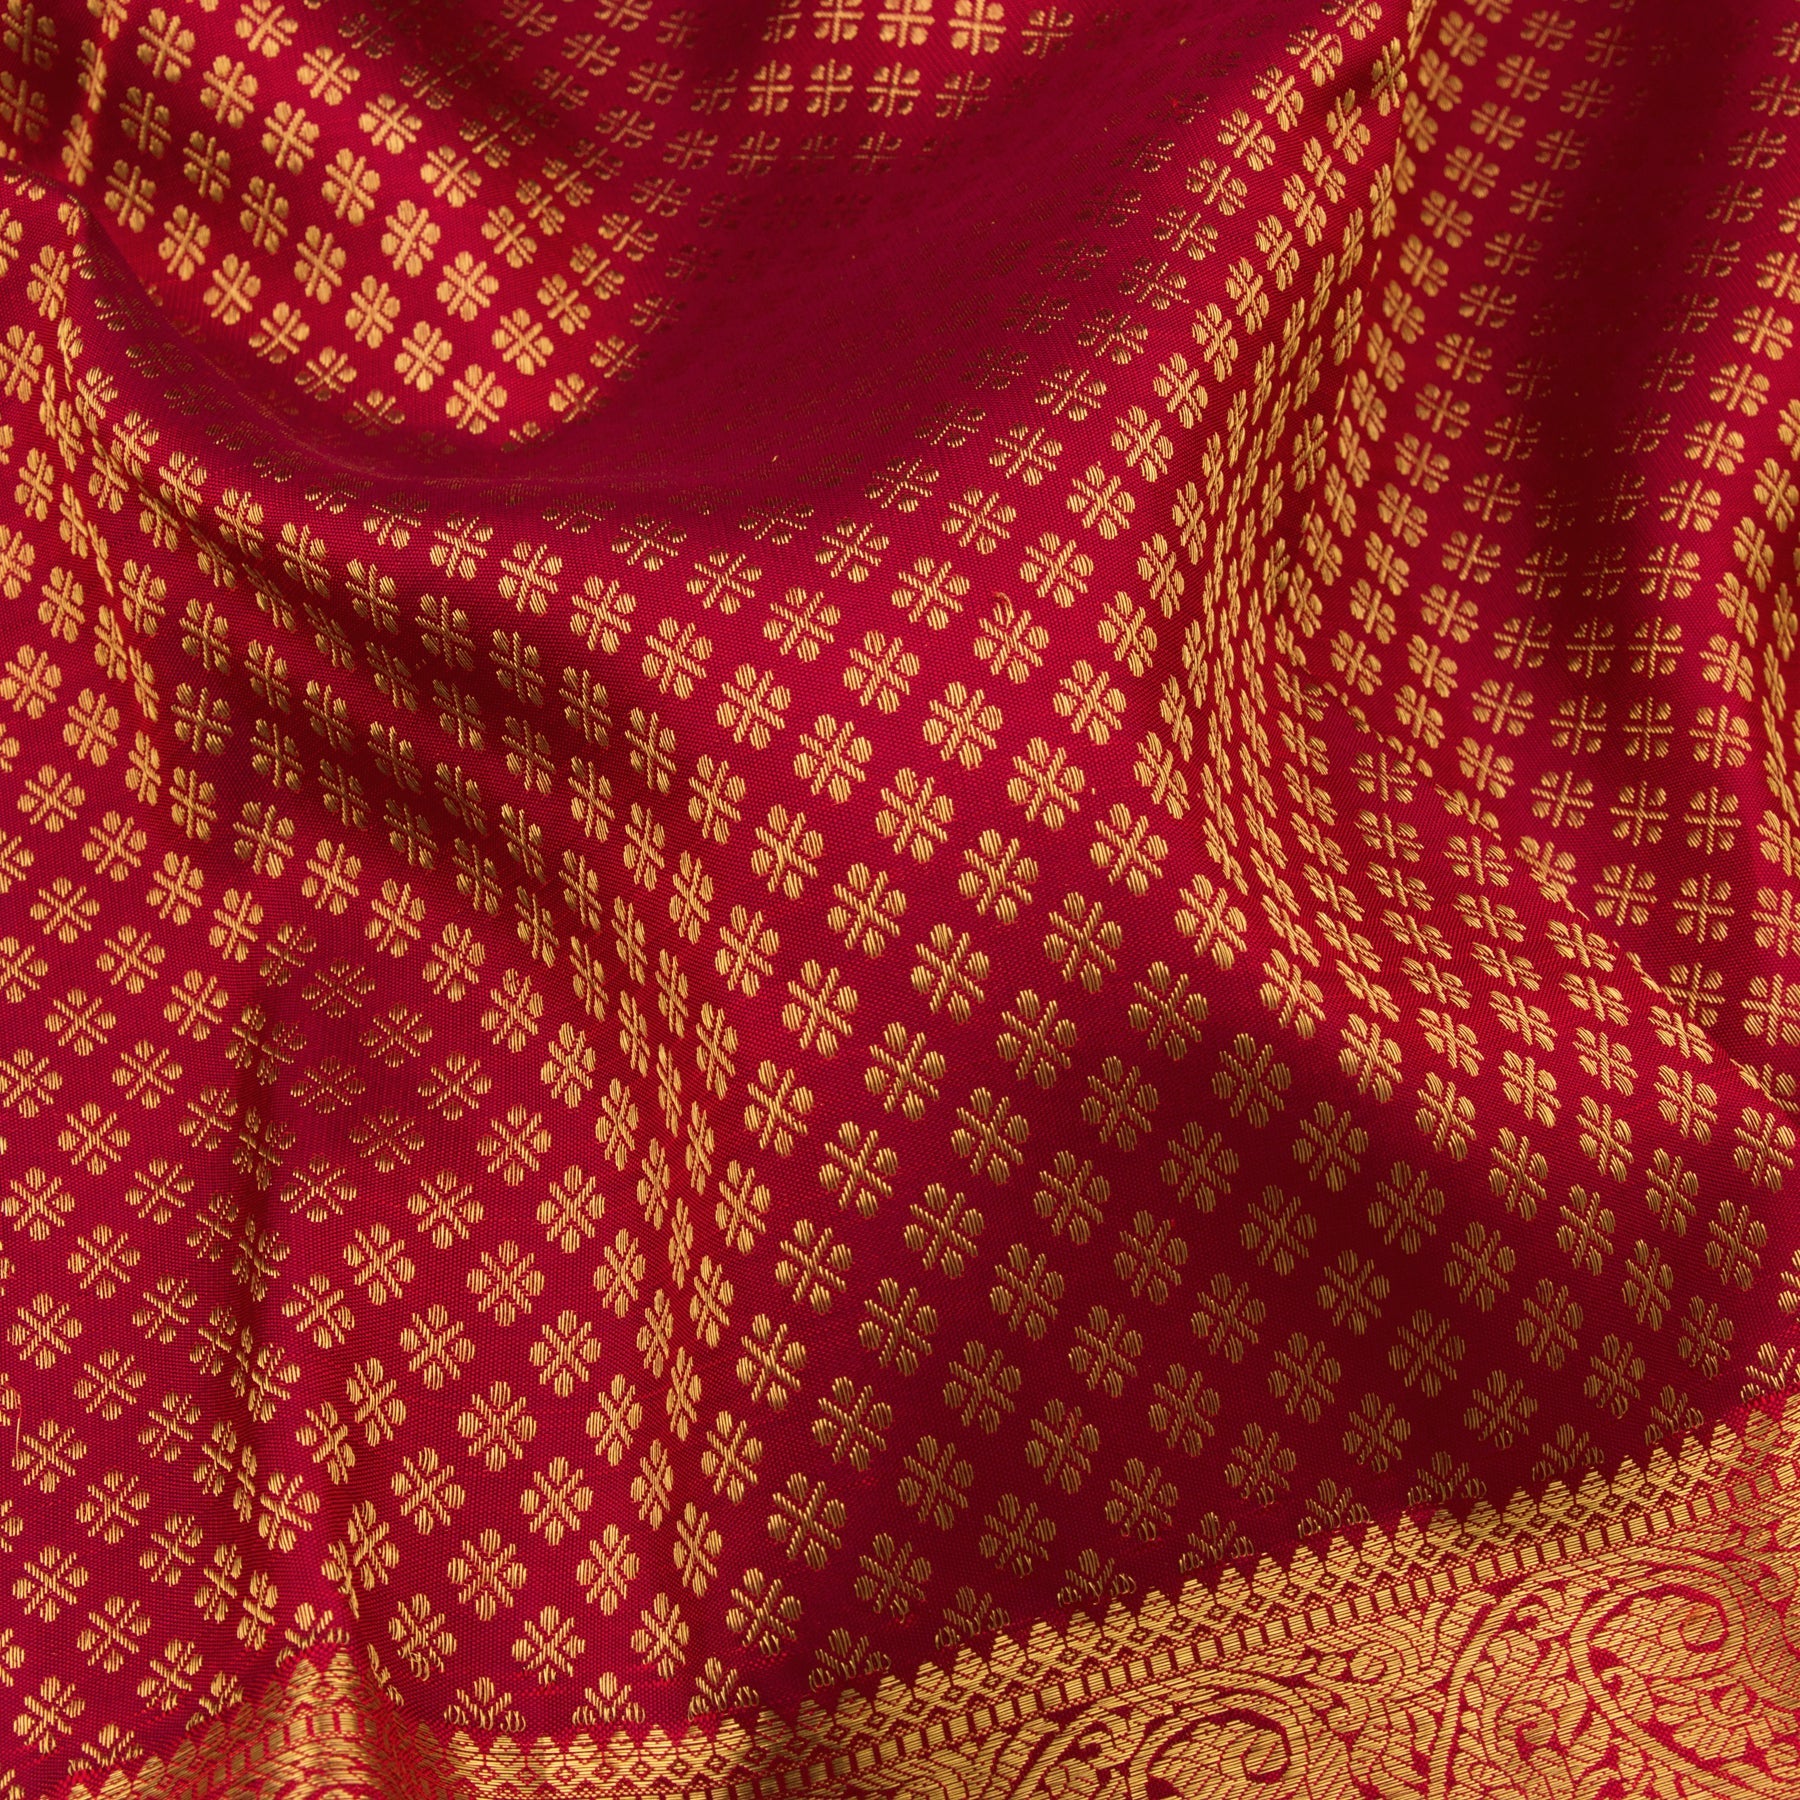 Kanakavalli Kanjivaram Silk Sari 22-100-HS001-11838 - Fabric View